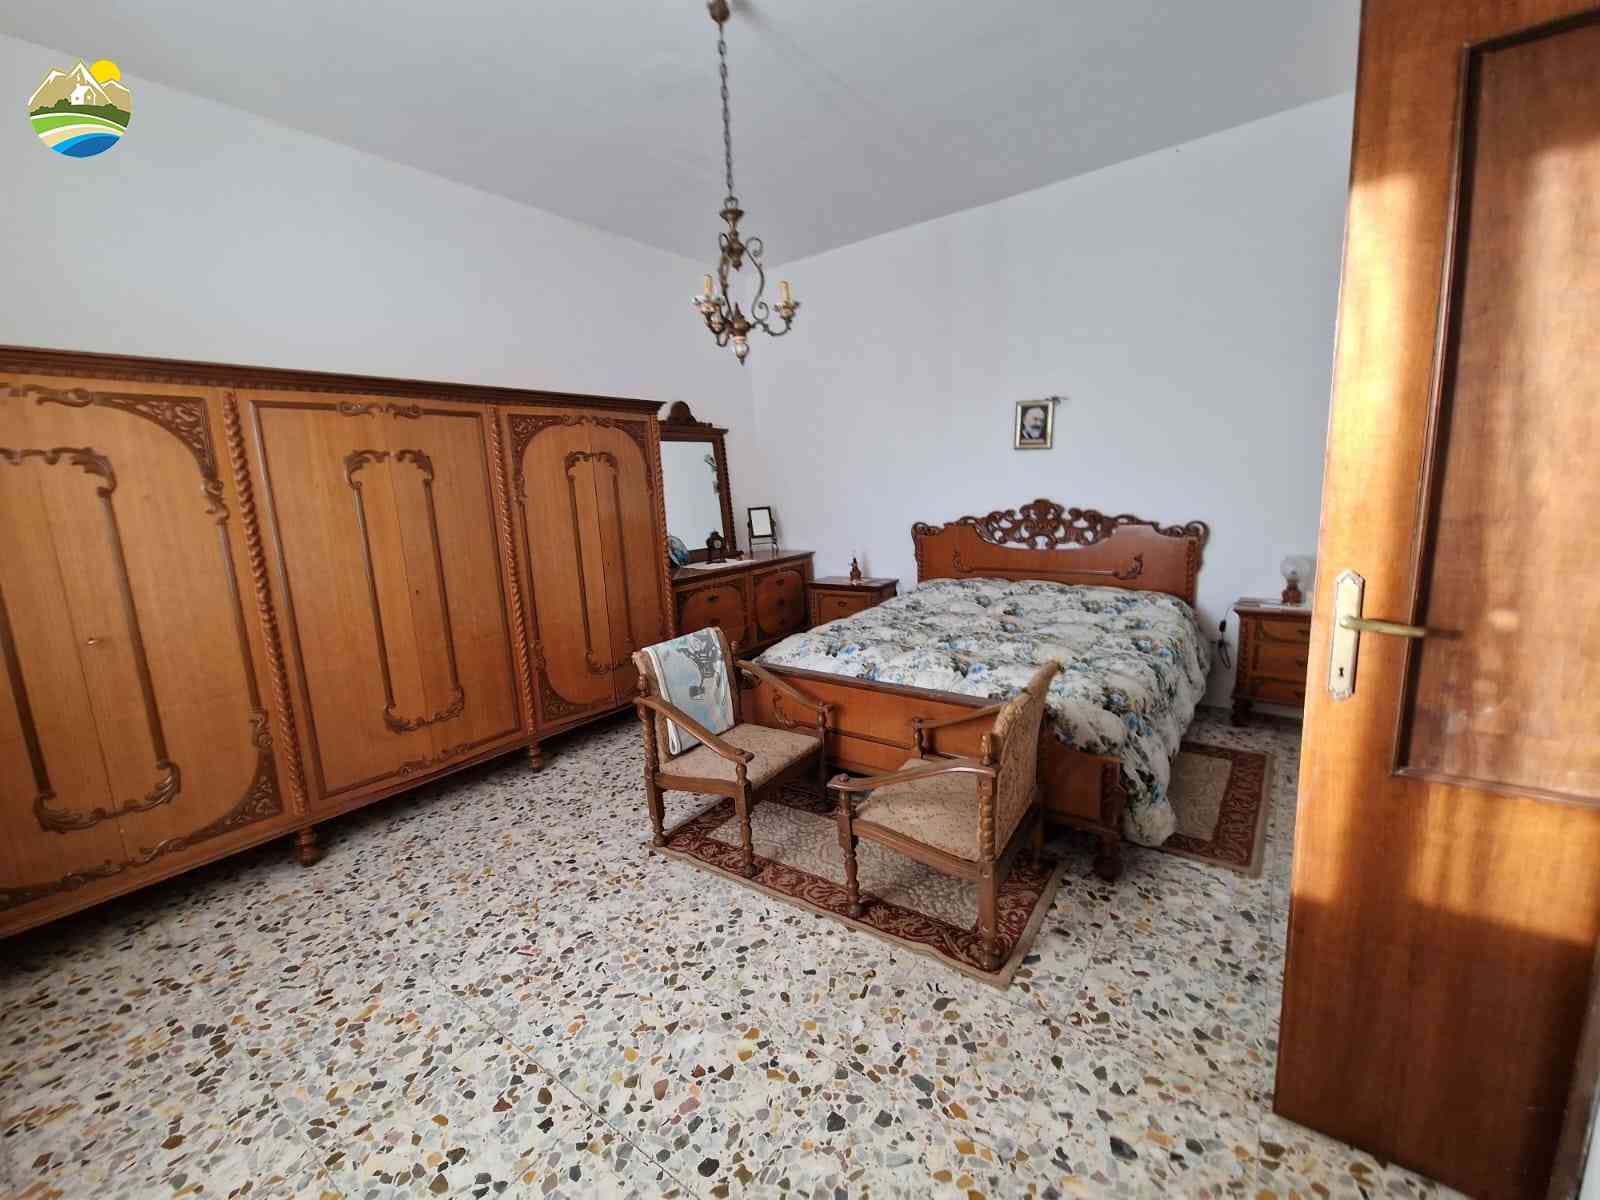 Casa di campagna Casa di campagna in vendita Cellino Attanasio (TE), Tenuta Vallerossa - Cellino Attanasio - EUR 238.752 720